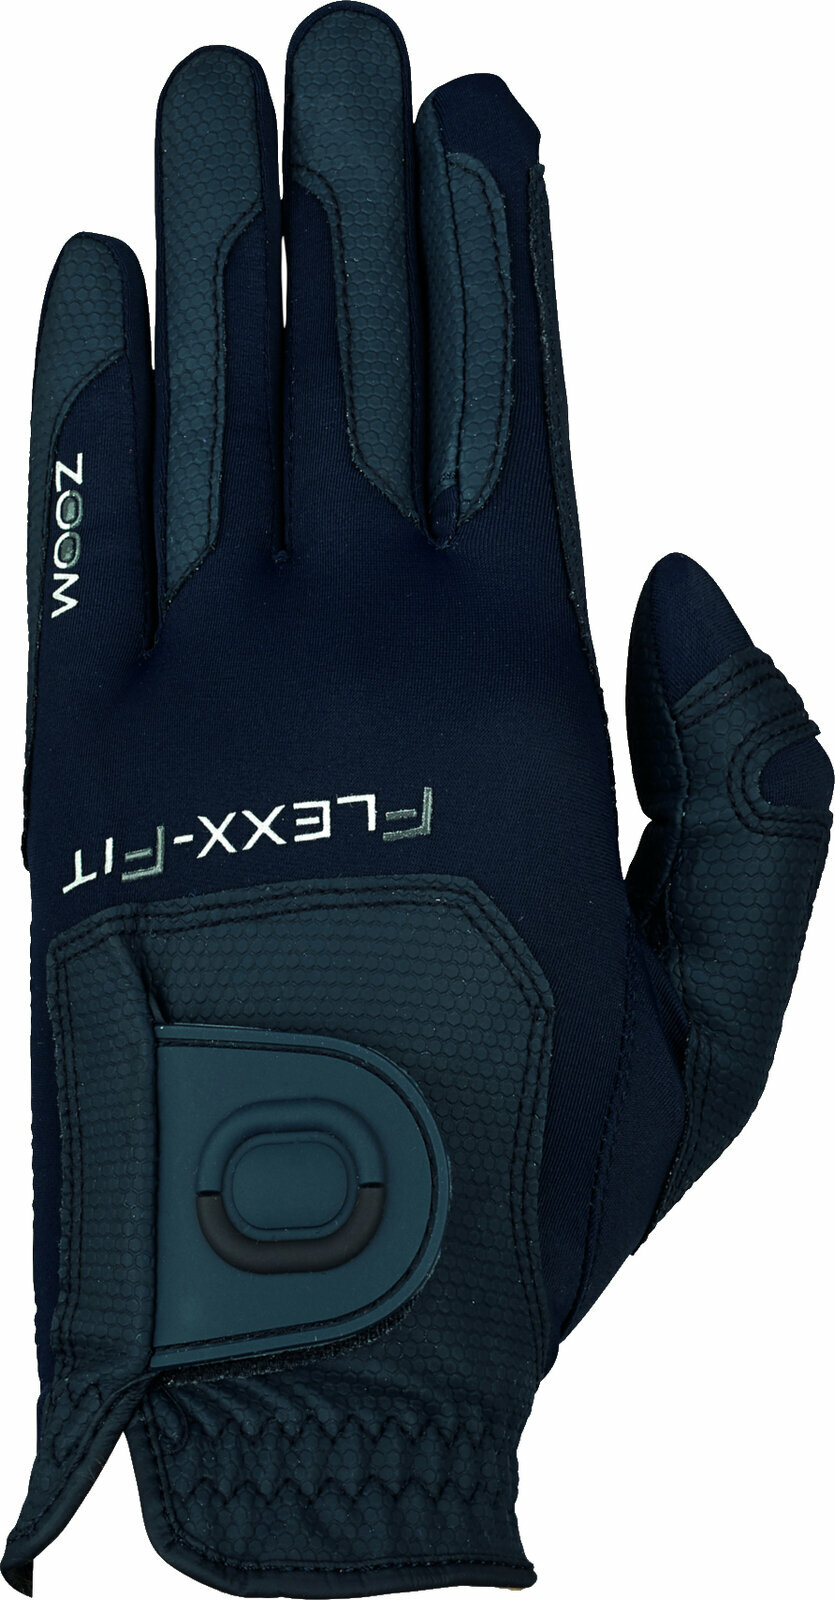 Gloves Zoom Gloves Weather Style Mens Golf Glove Navy LH